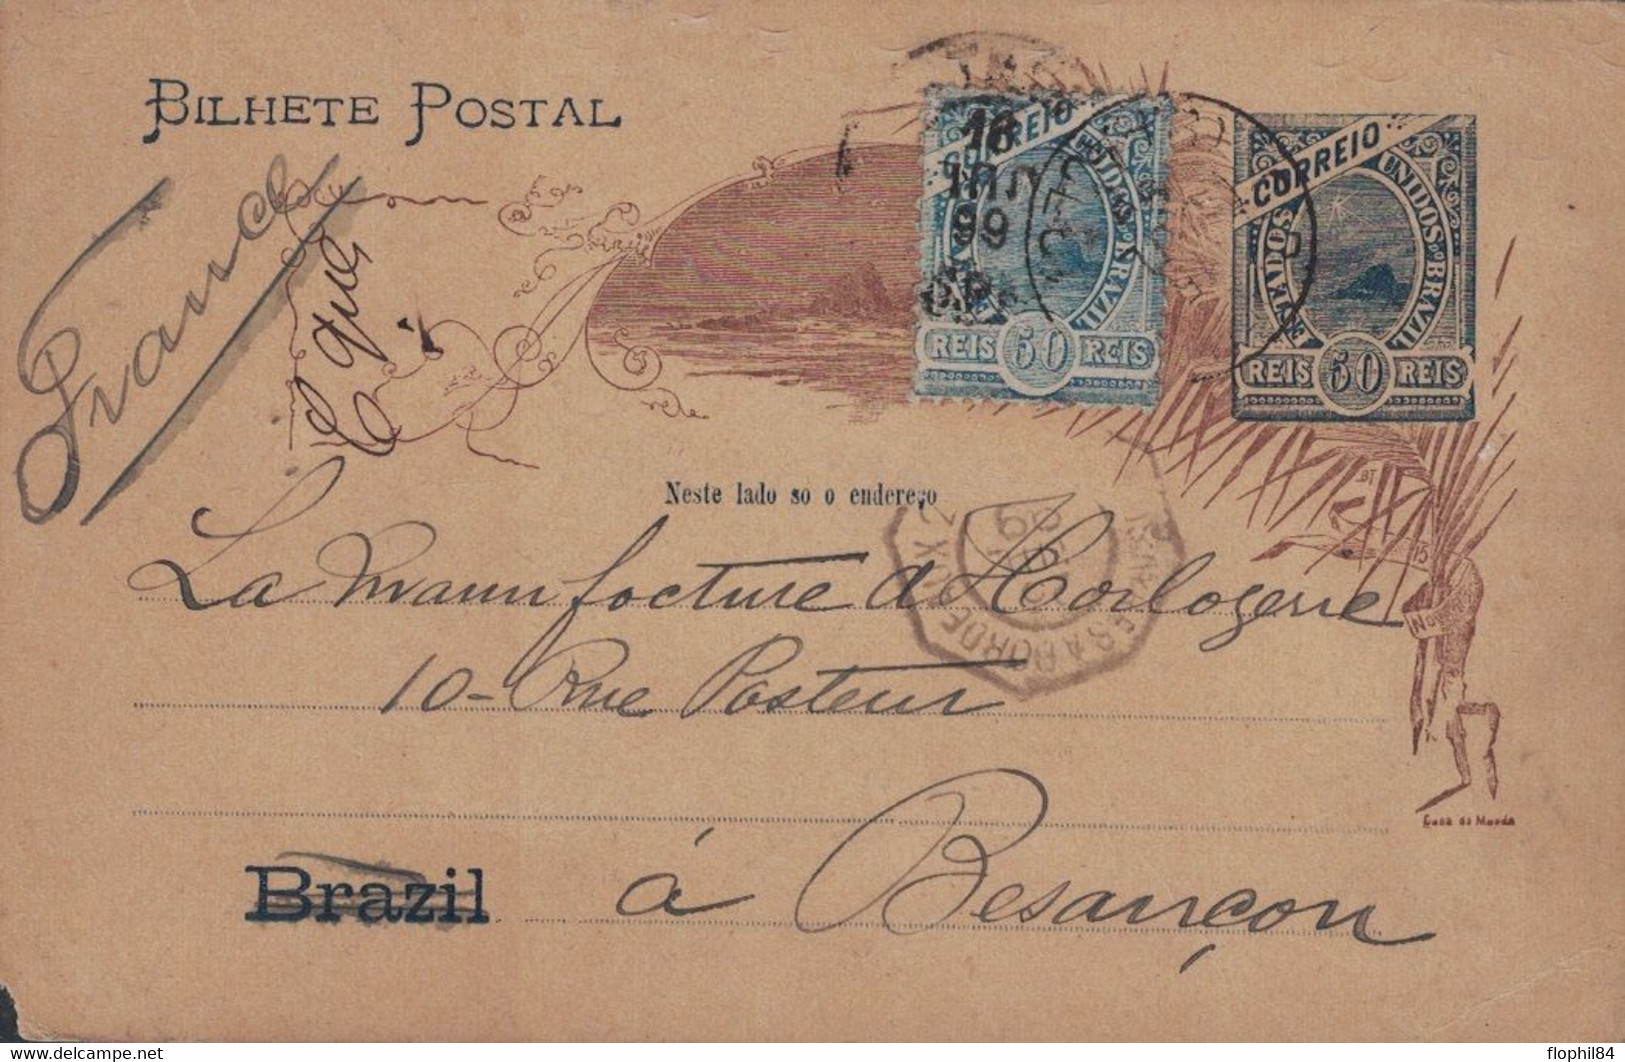 BRESIL - ENTIER POSTAL AVEC TIMBRE POUR BESANCON FRANCE - CACHET PAQUEBOT BUENOS-AYRES A BORDEAUX 20-7-1899 - Covers & Documents